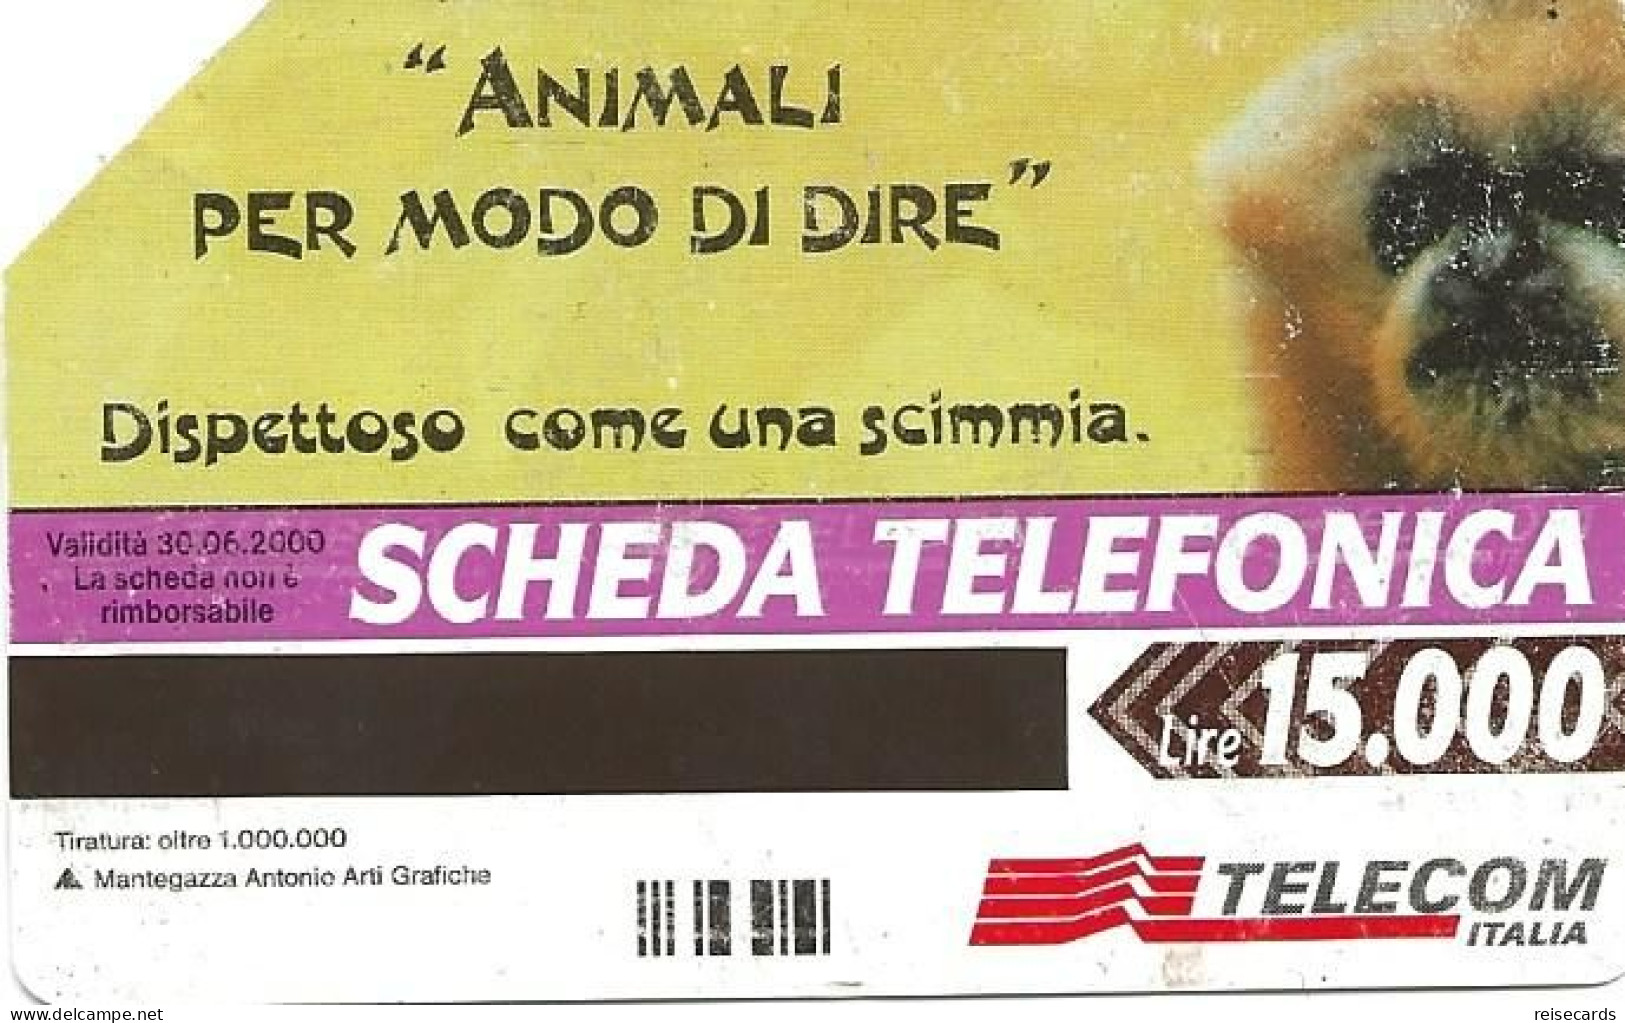 Italy: Telecom Italia - Animali Per Modo Di Dire - Openbare Reclame